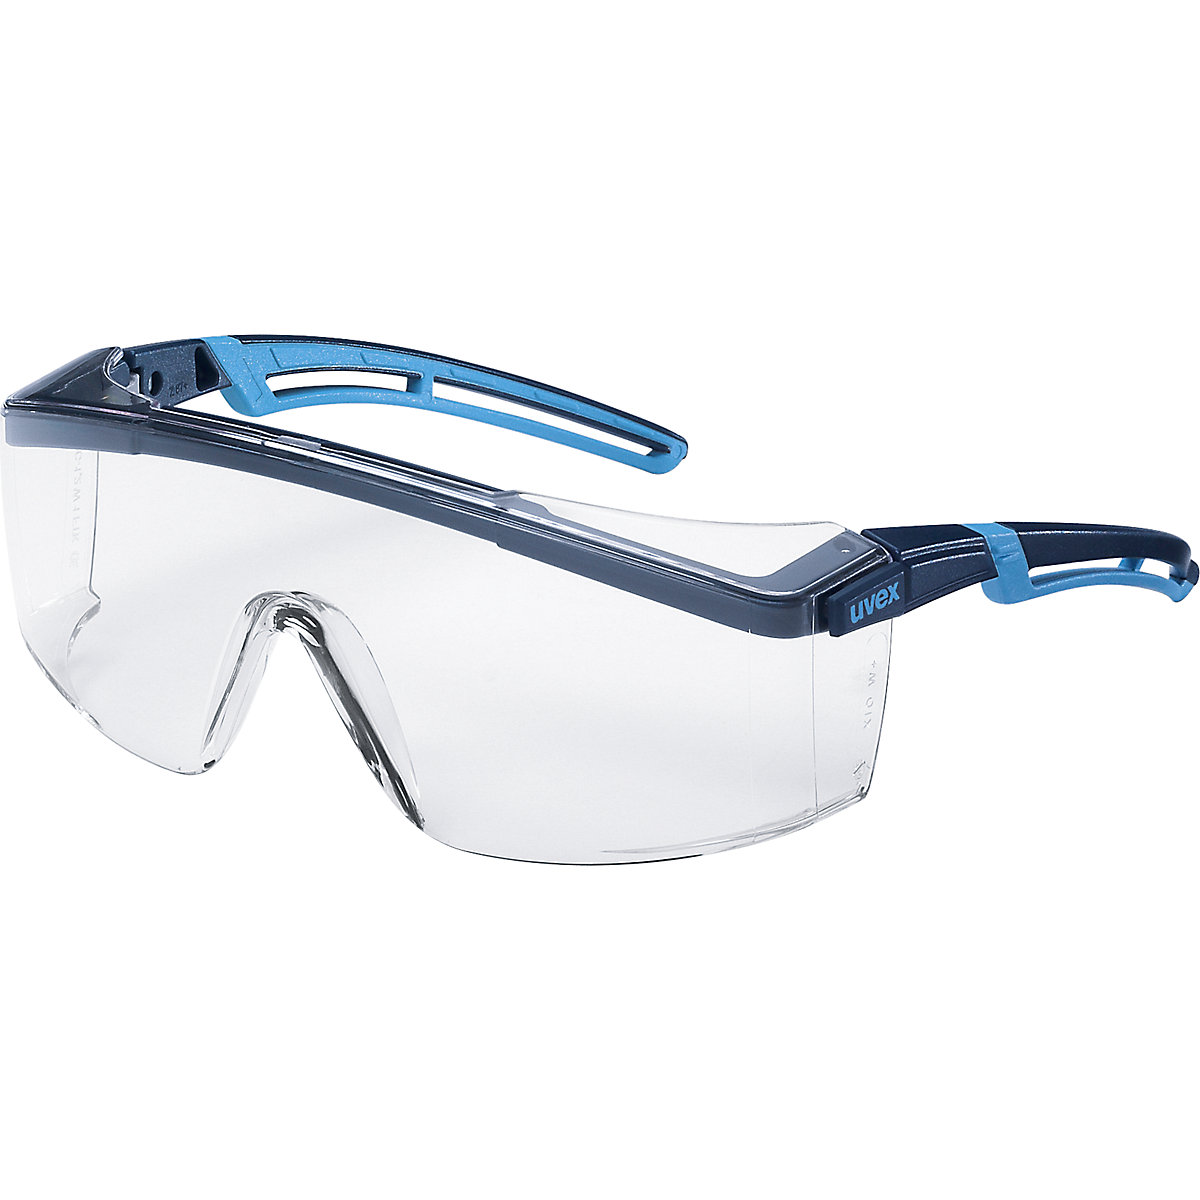 atrospec 2.0 száras védőszemüveg – Uvex